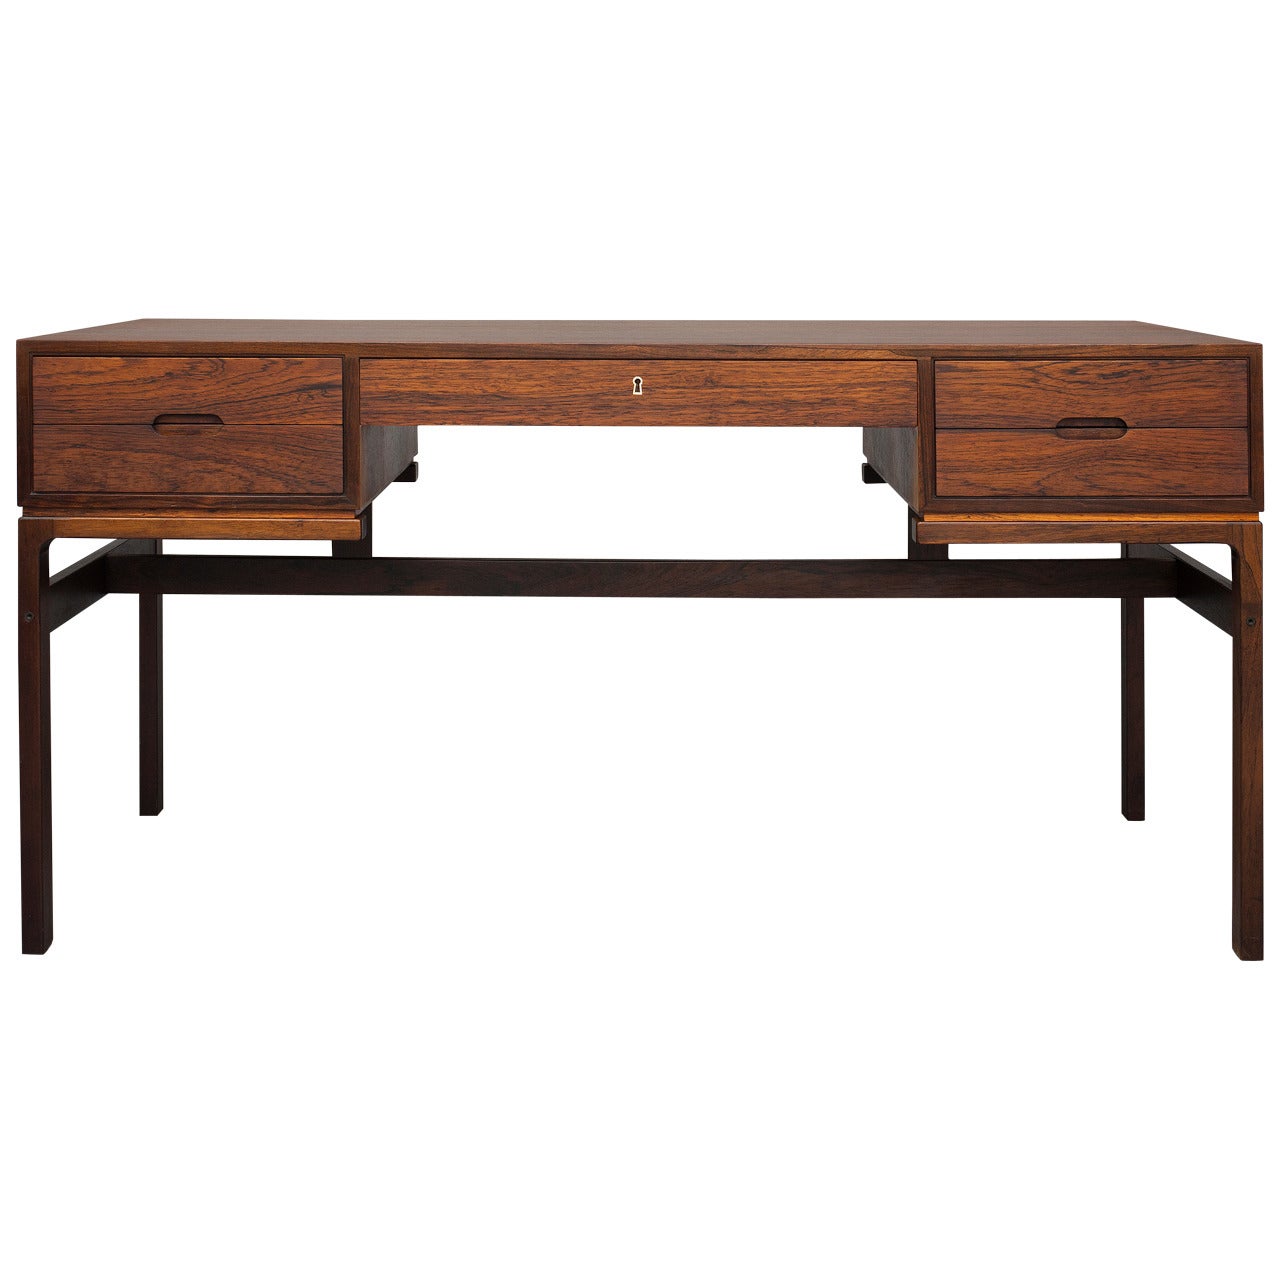 Desk by Arne Wahl Iversen for Vinde Furniture.